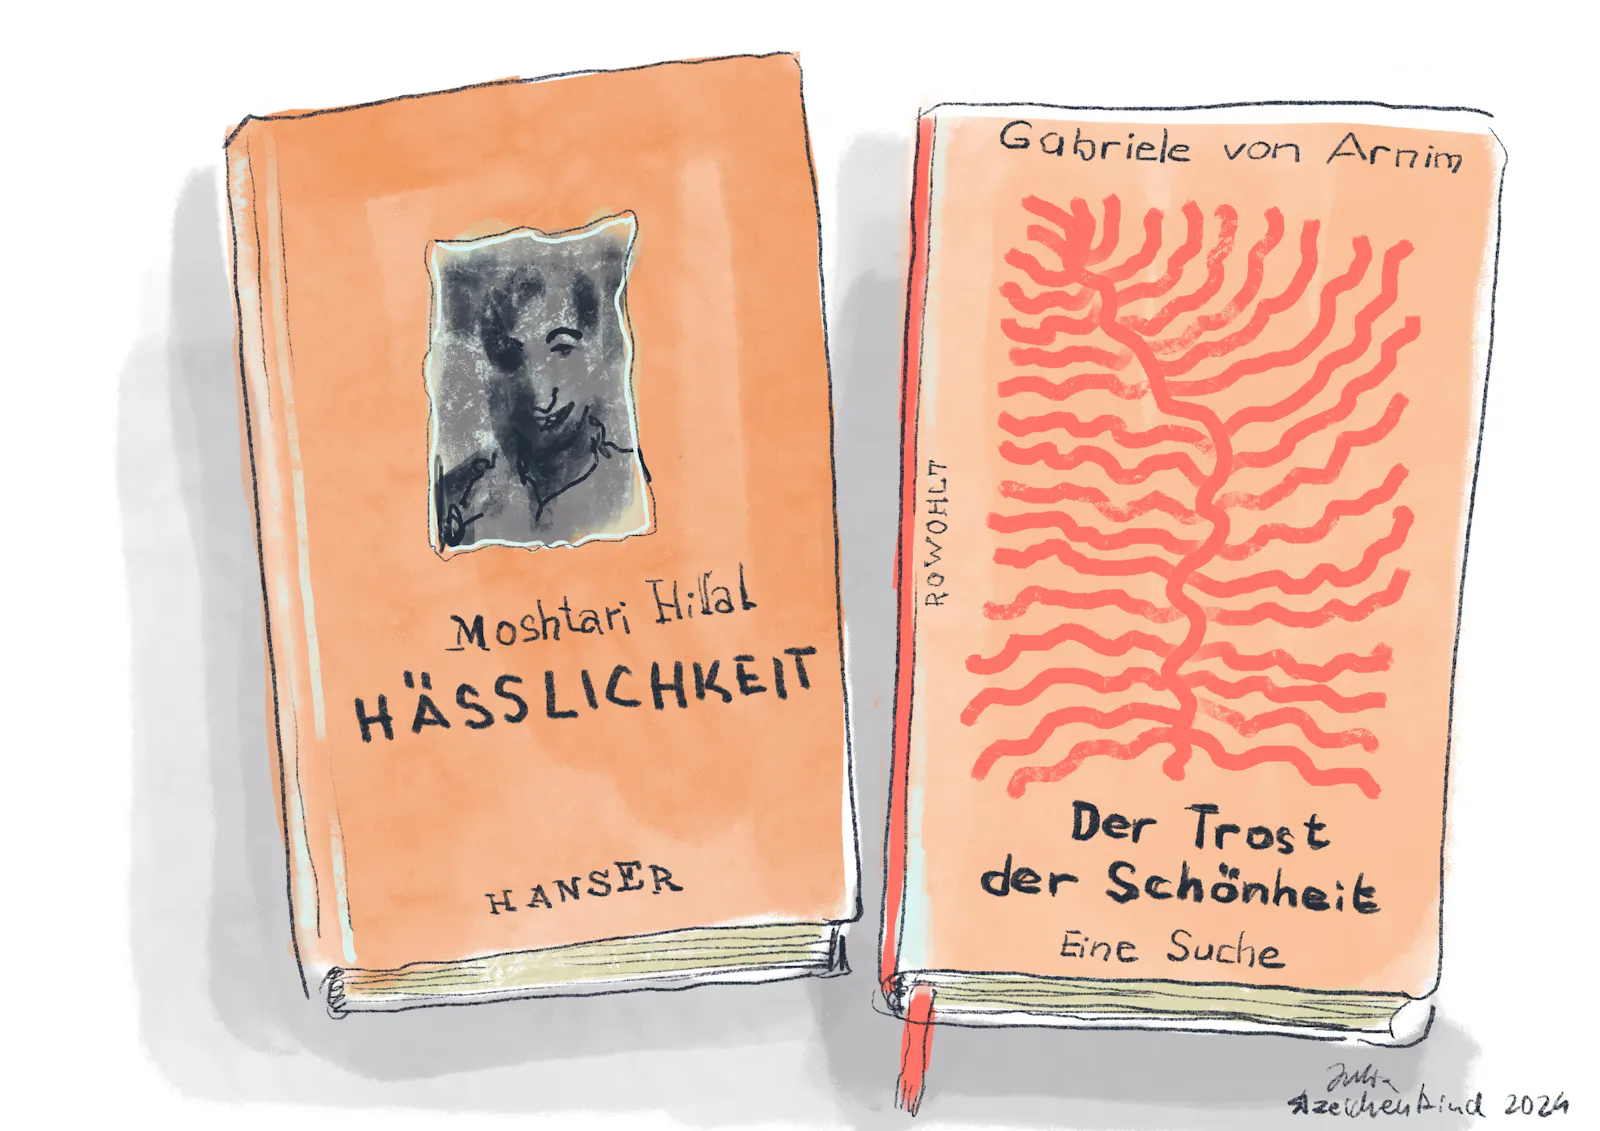 Farbige Strichzeichnung von den Büchern "Hässlichkeit" und "Der Trost der Schönheit".